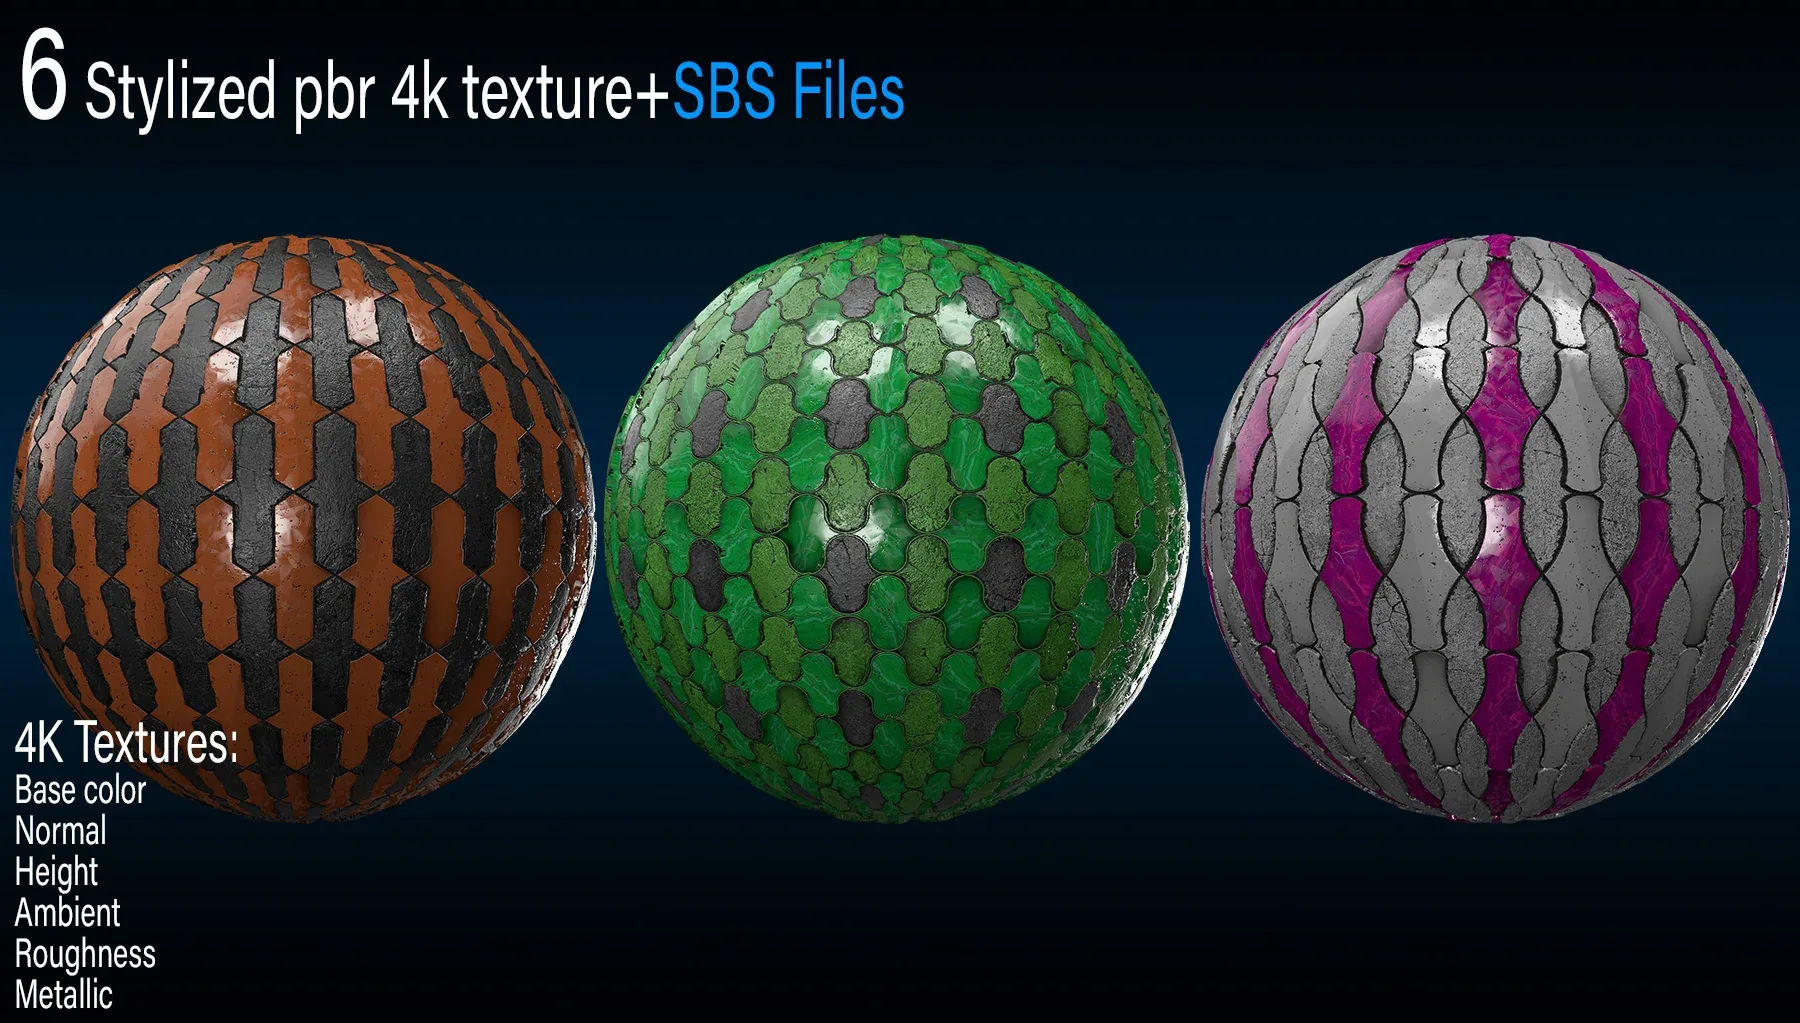 6 Stylized pbr 4k texture + sbs files